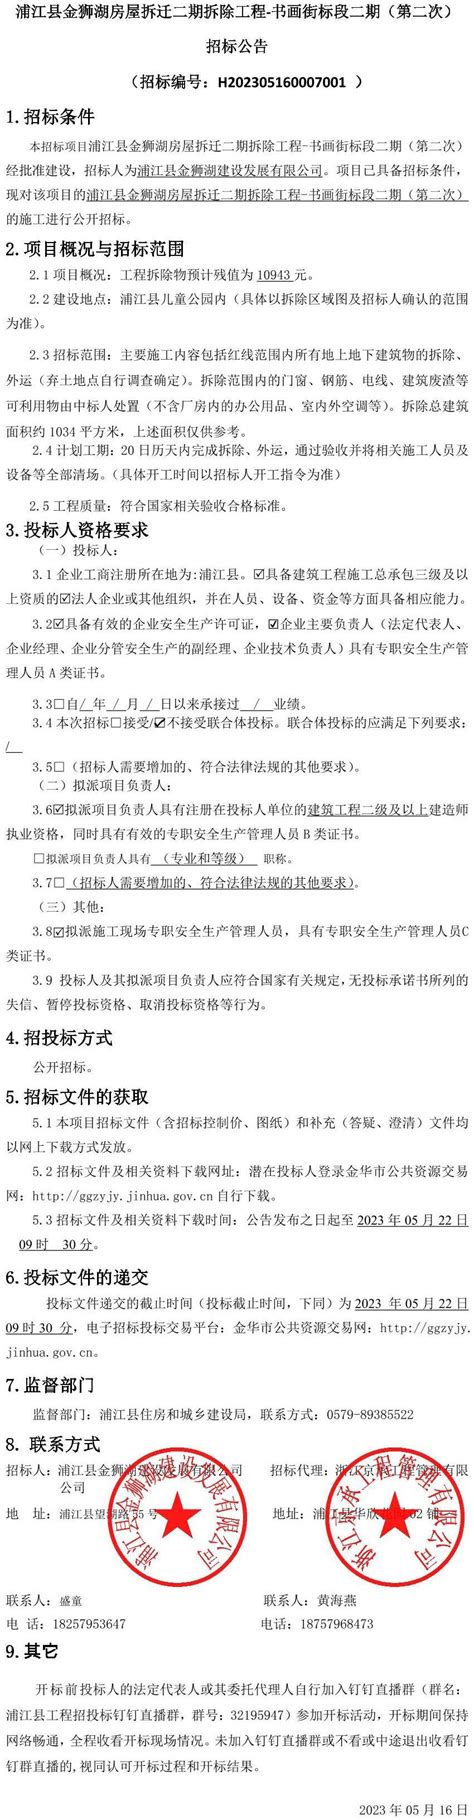 浦江县金狮湖房屋拆迁二期拆除工程-书画街标段二期（第二次）招标公告